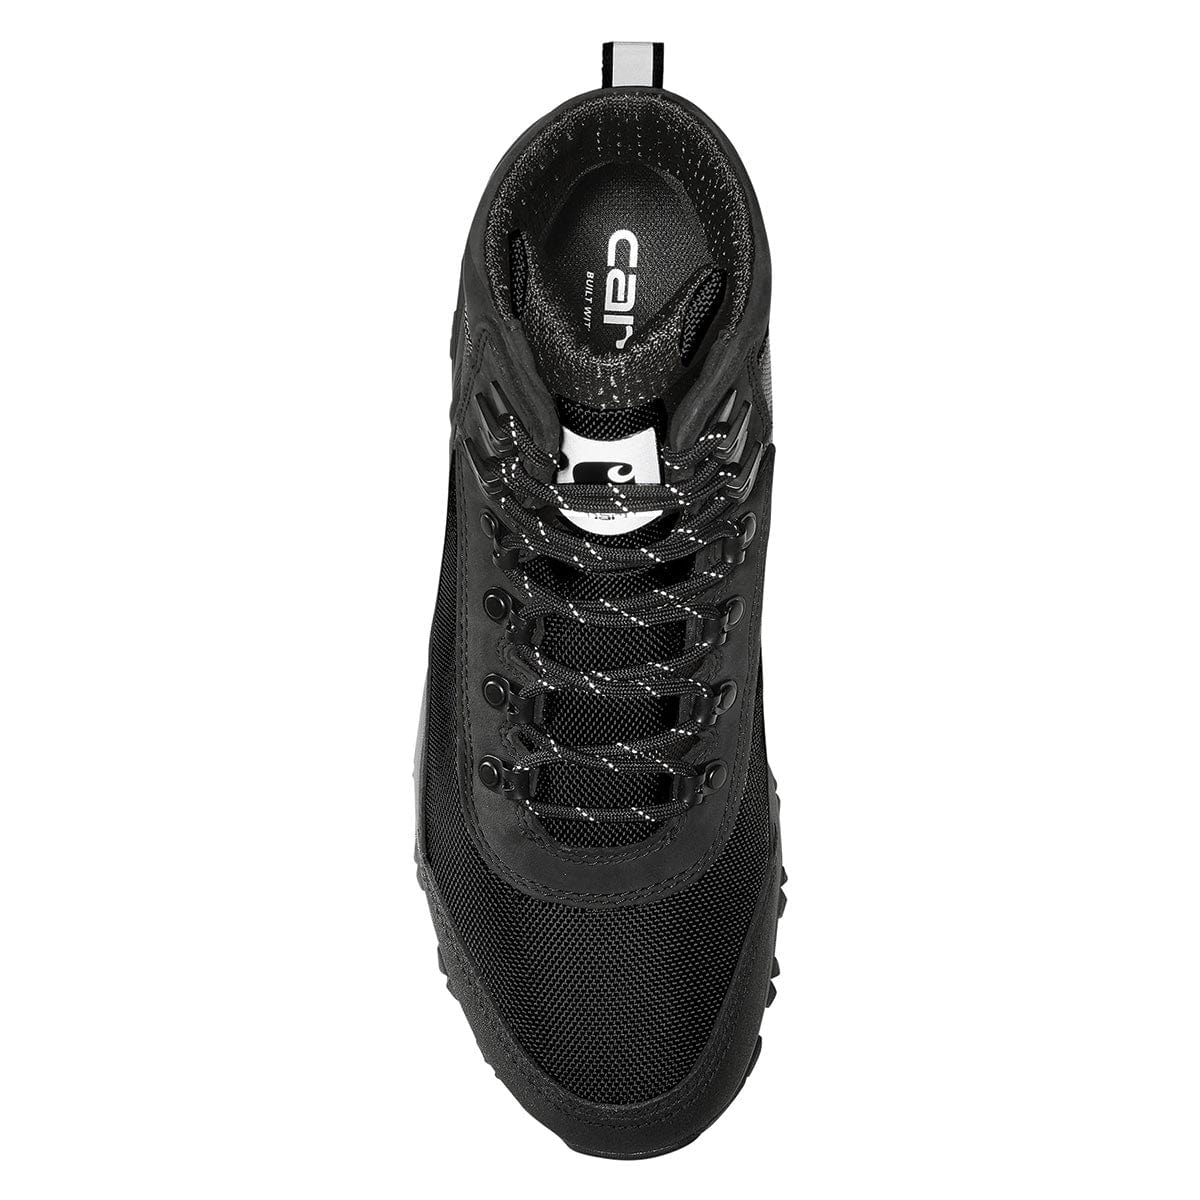 Carhartt Men's Waterproof 6" Hiker Boots - Black